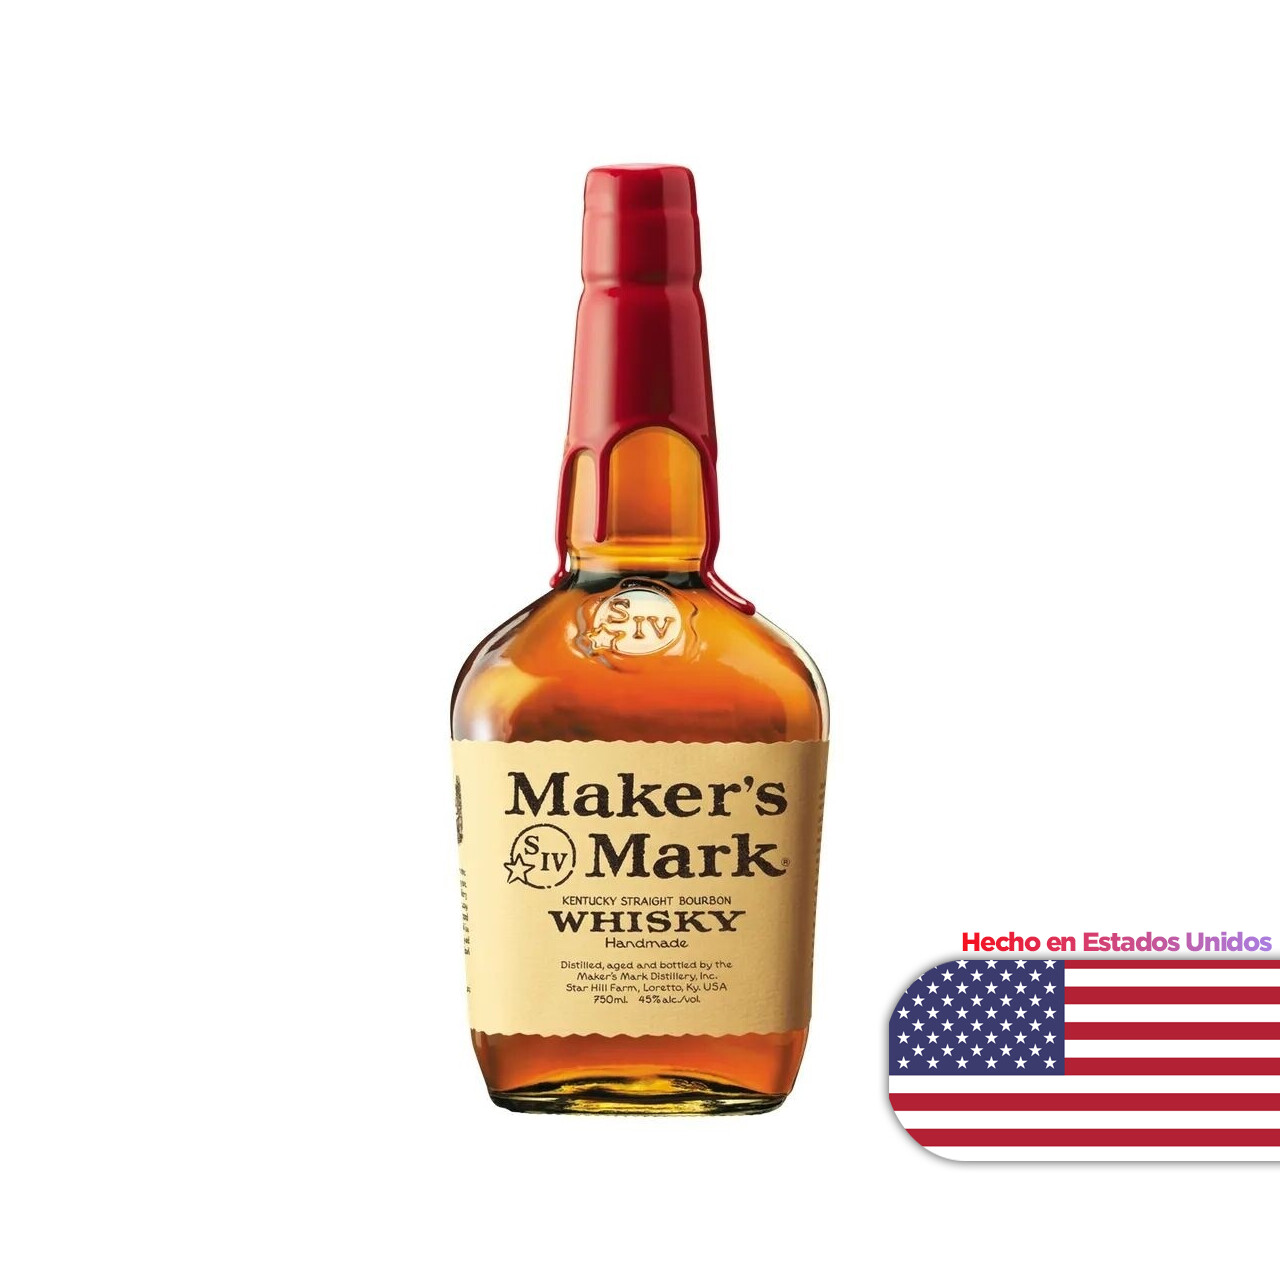 Whisky Maker's mark x750 cc